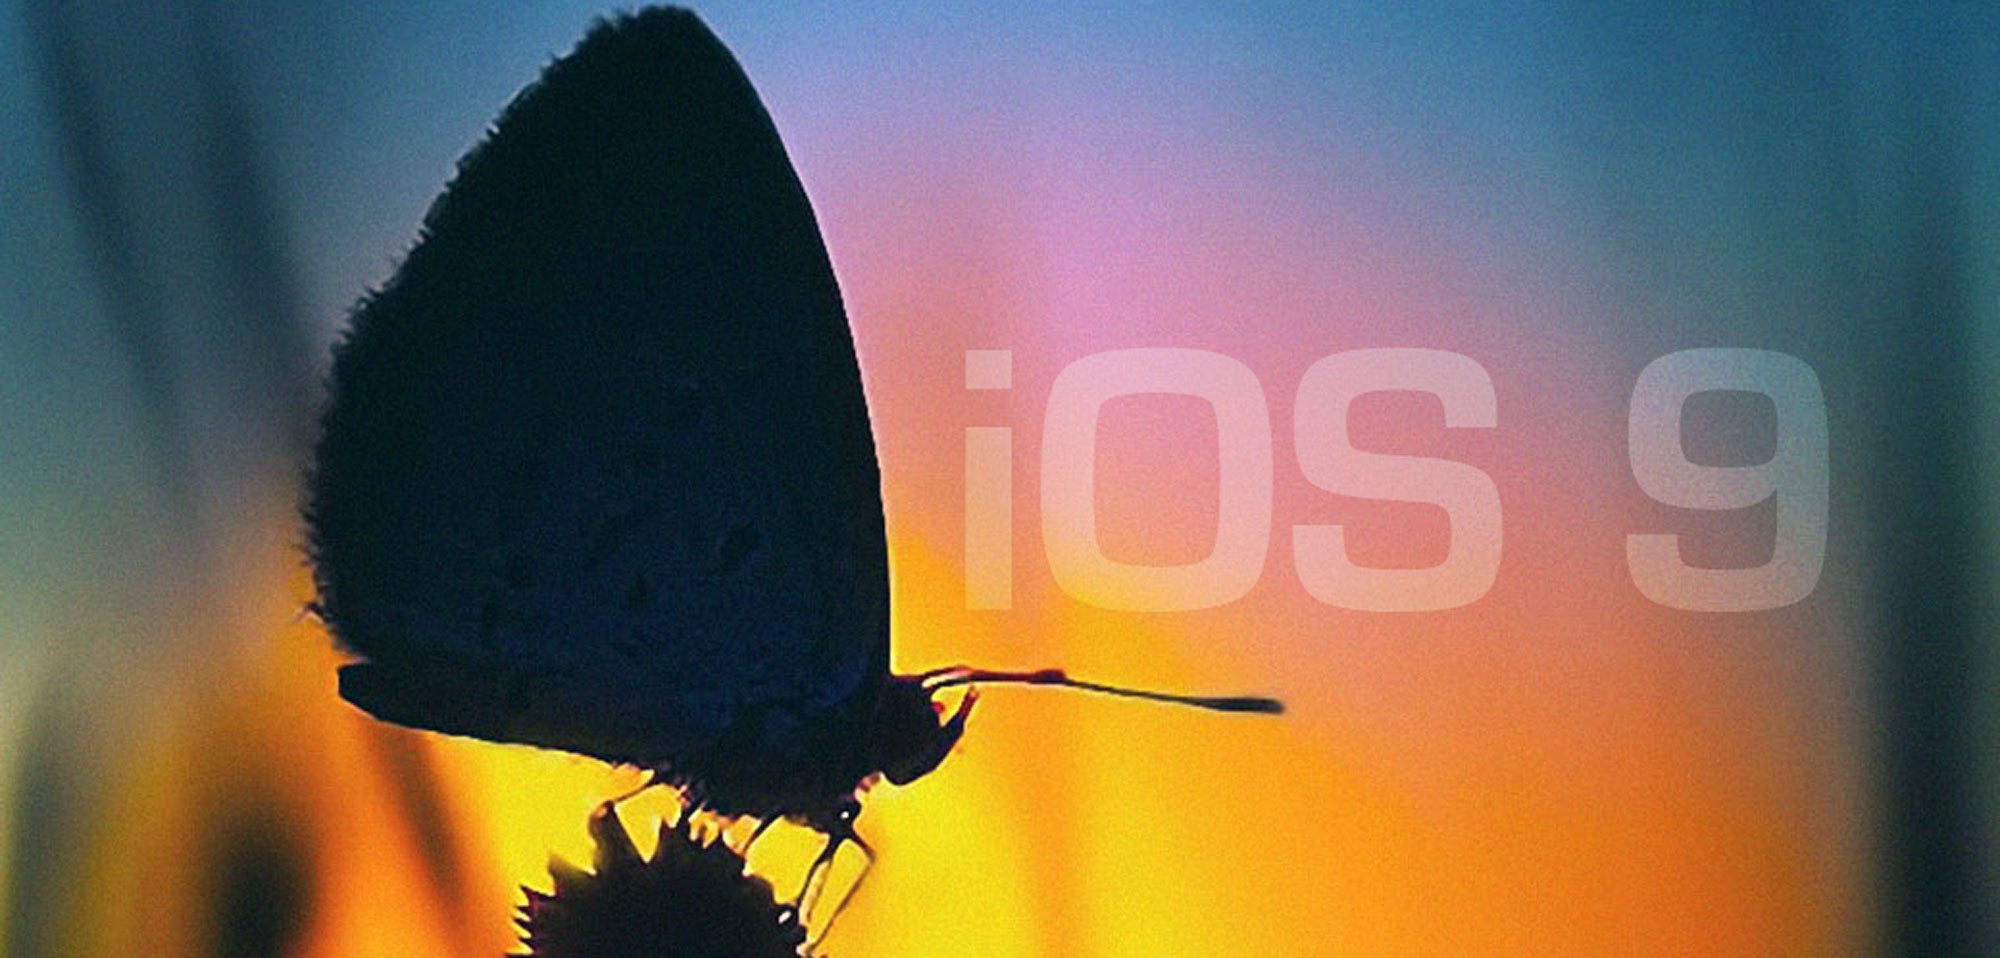 iOS 8.3 im Test, iOS 8.4 in Arbeit, iOS 9 noch besser & stabiler 1